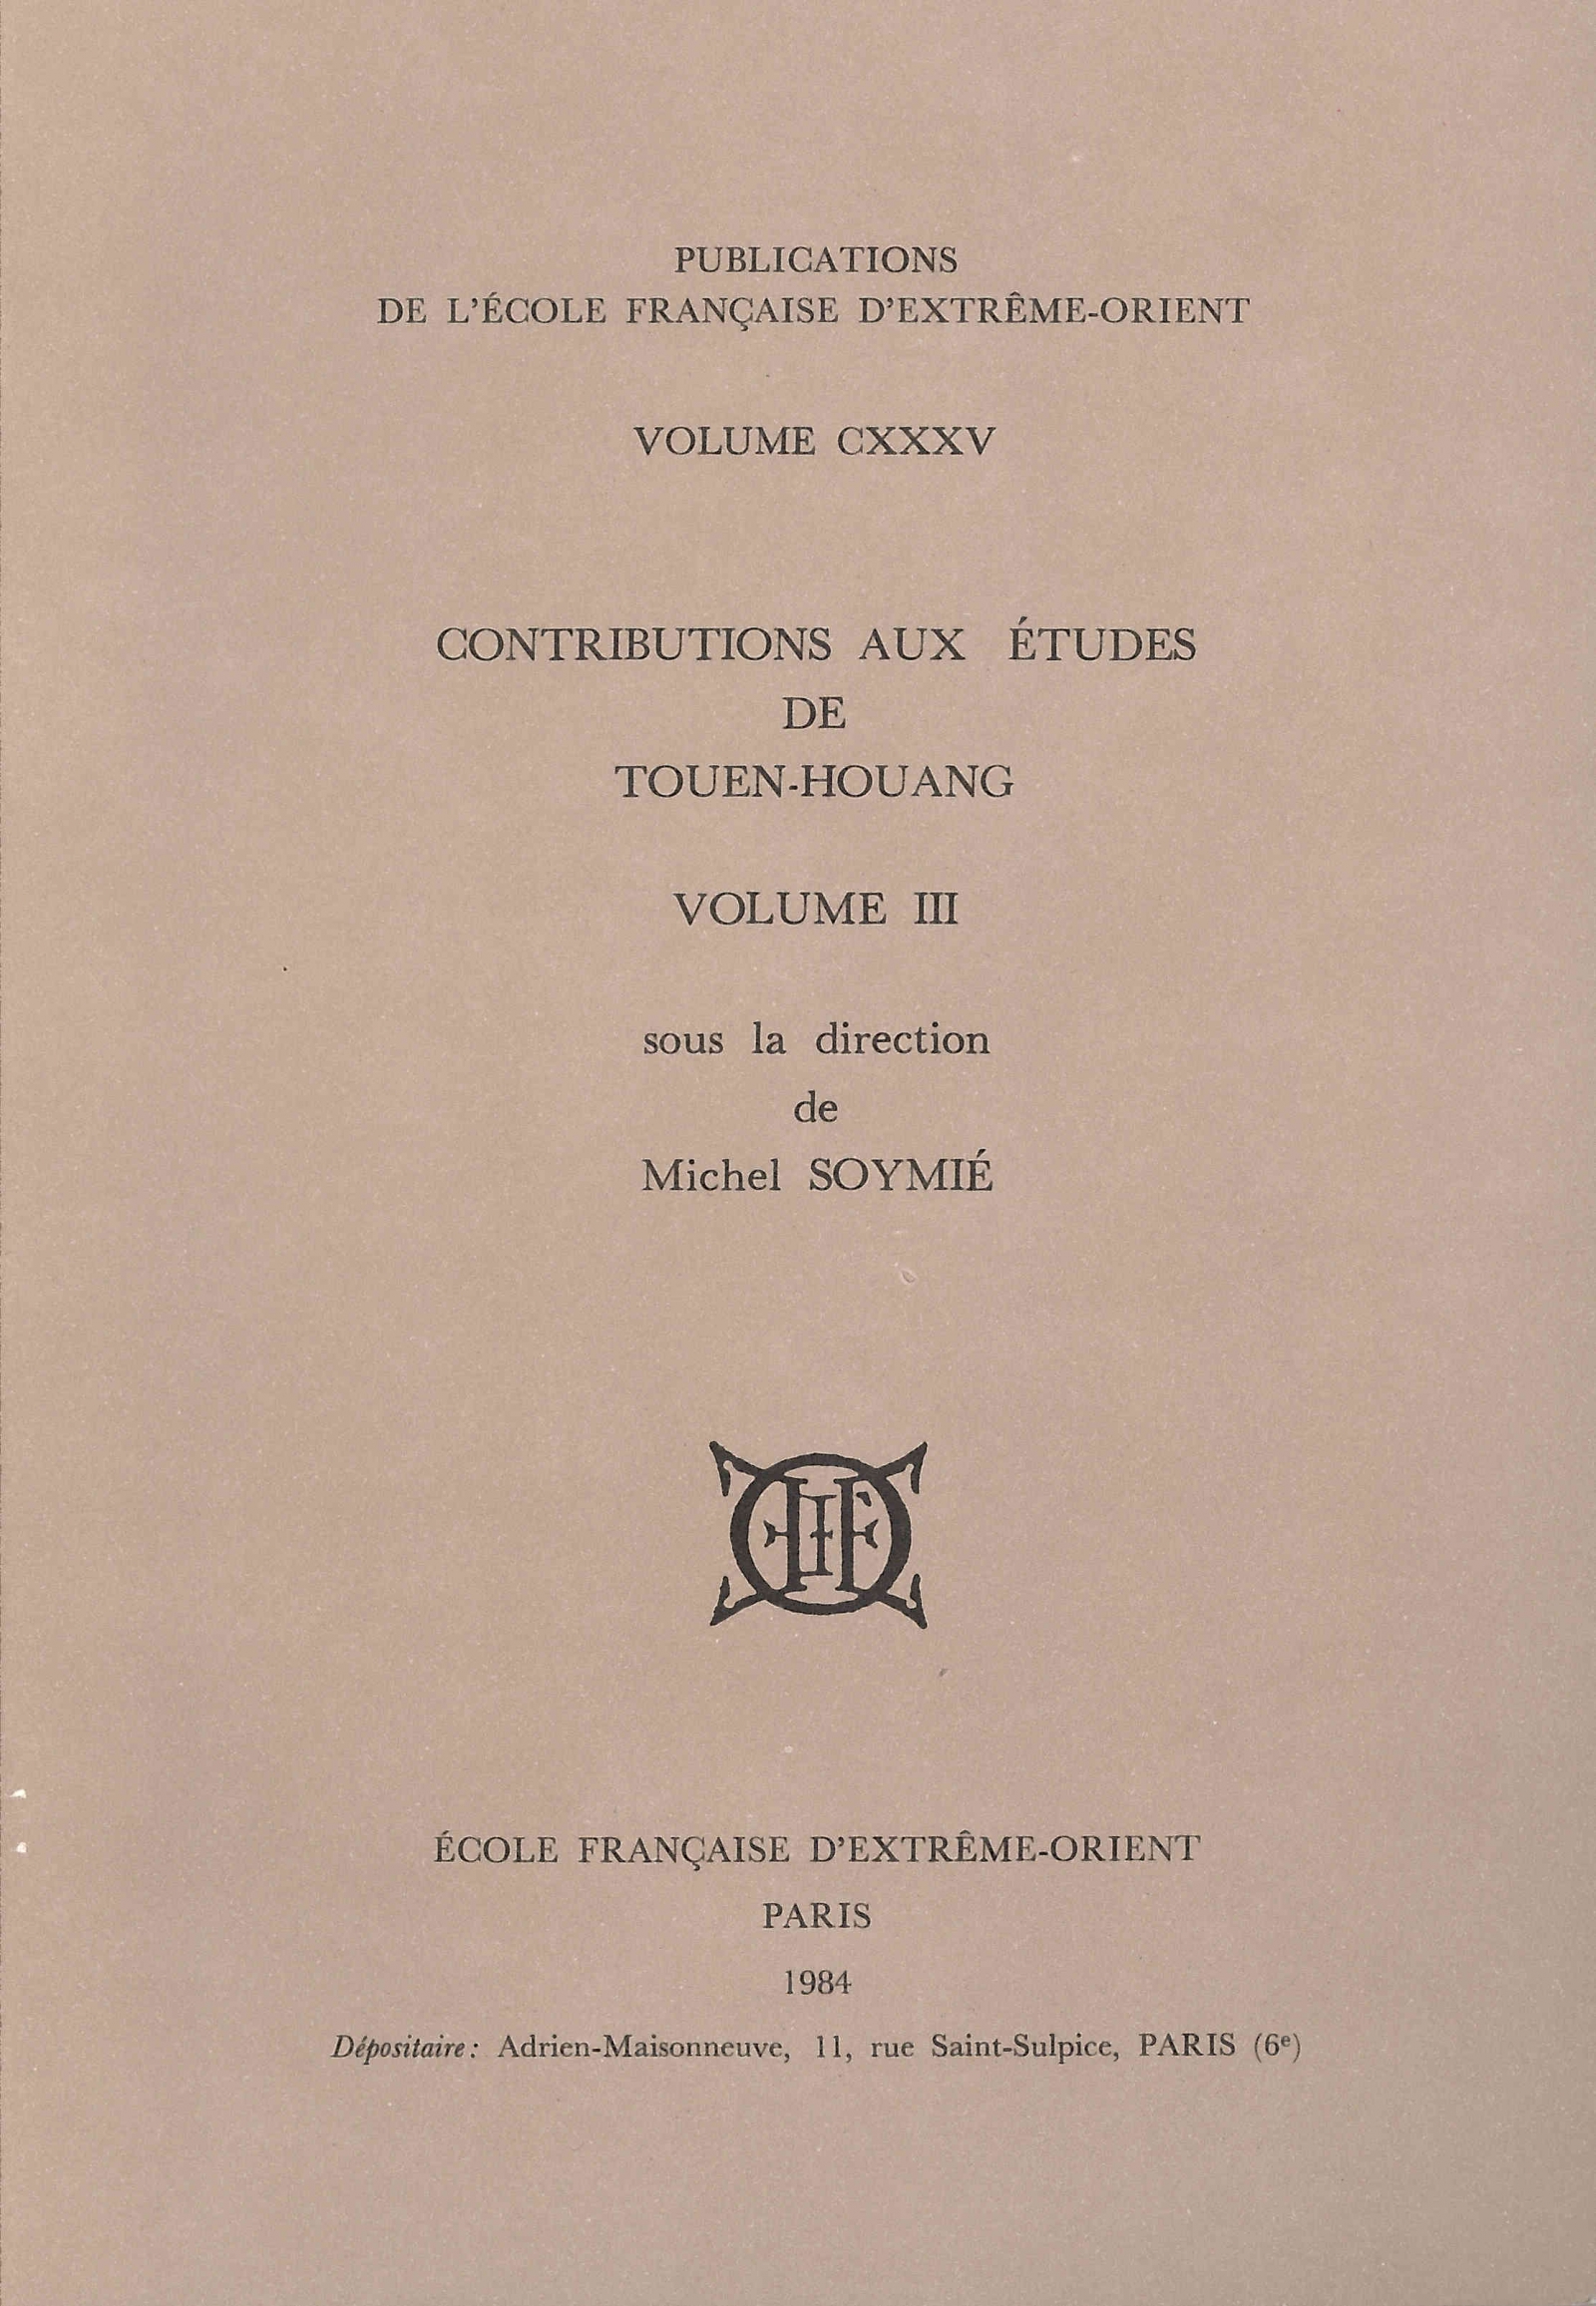 Contributions aux Études de Touen-Houang volume III